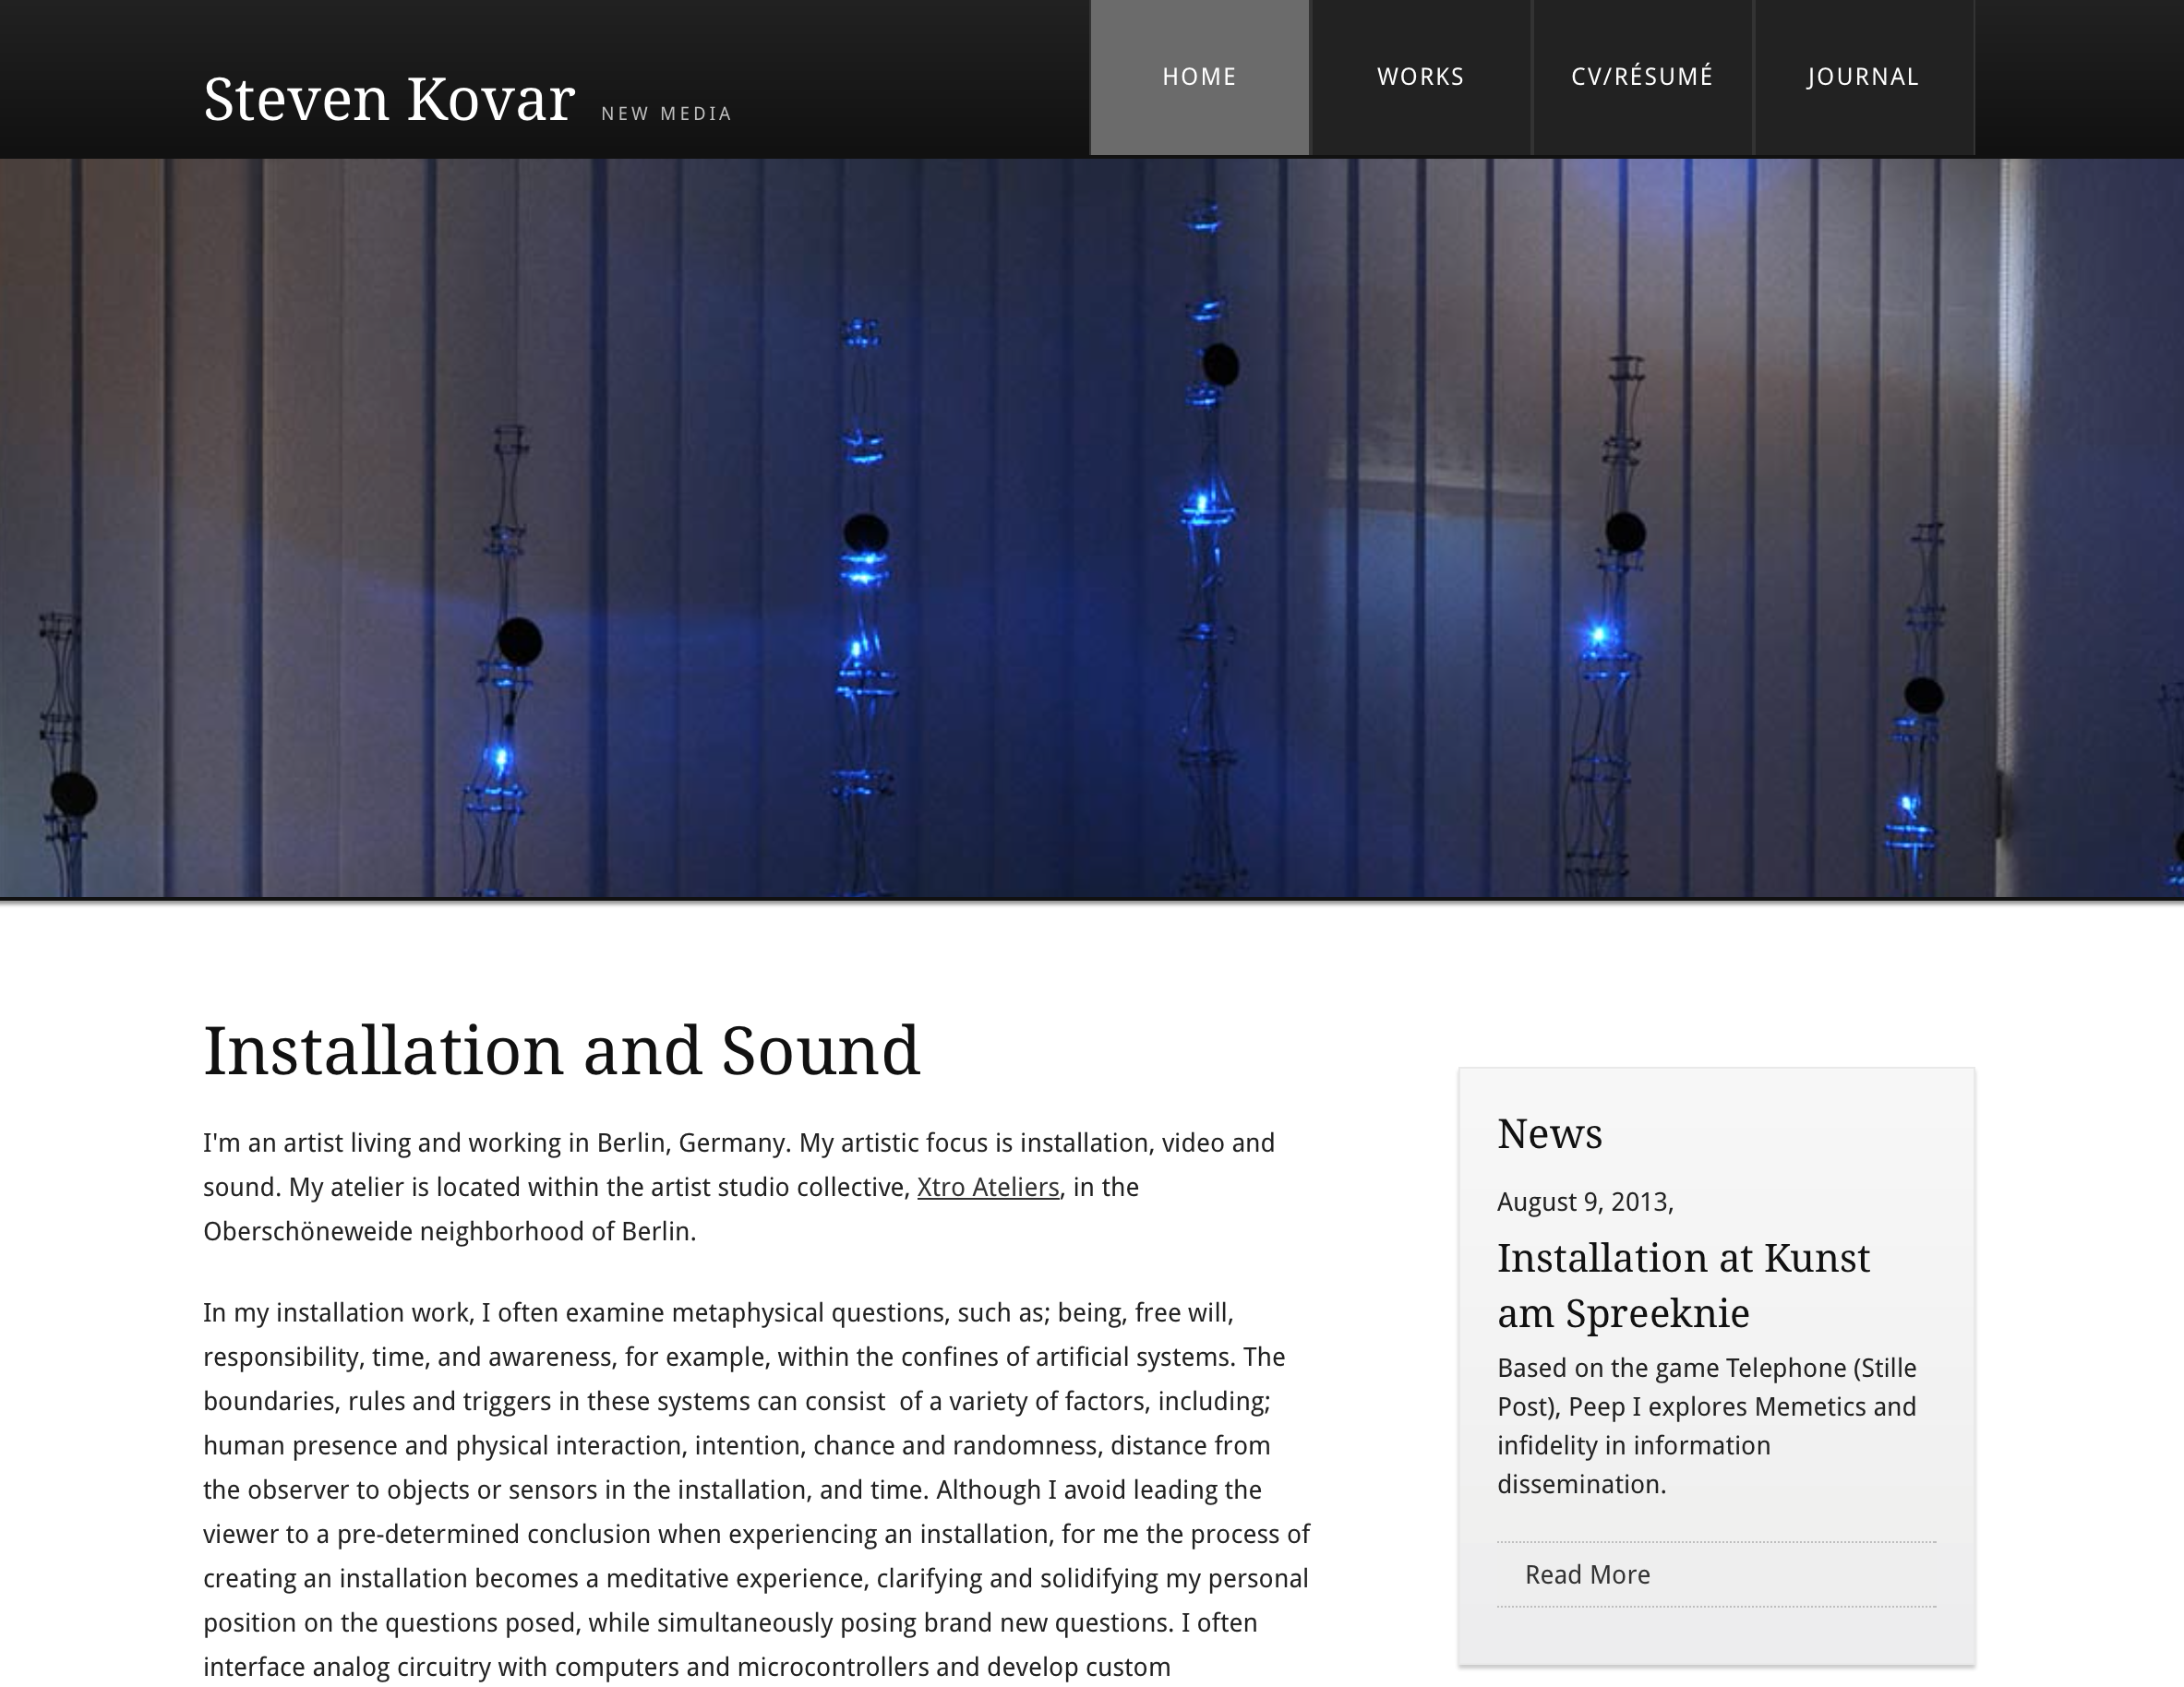 Steven Kovar: New Media